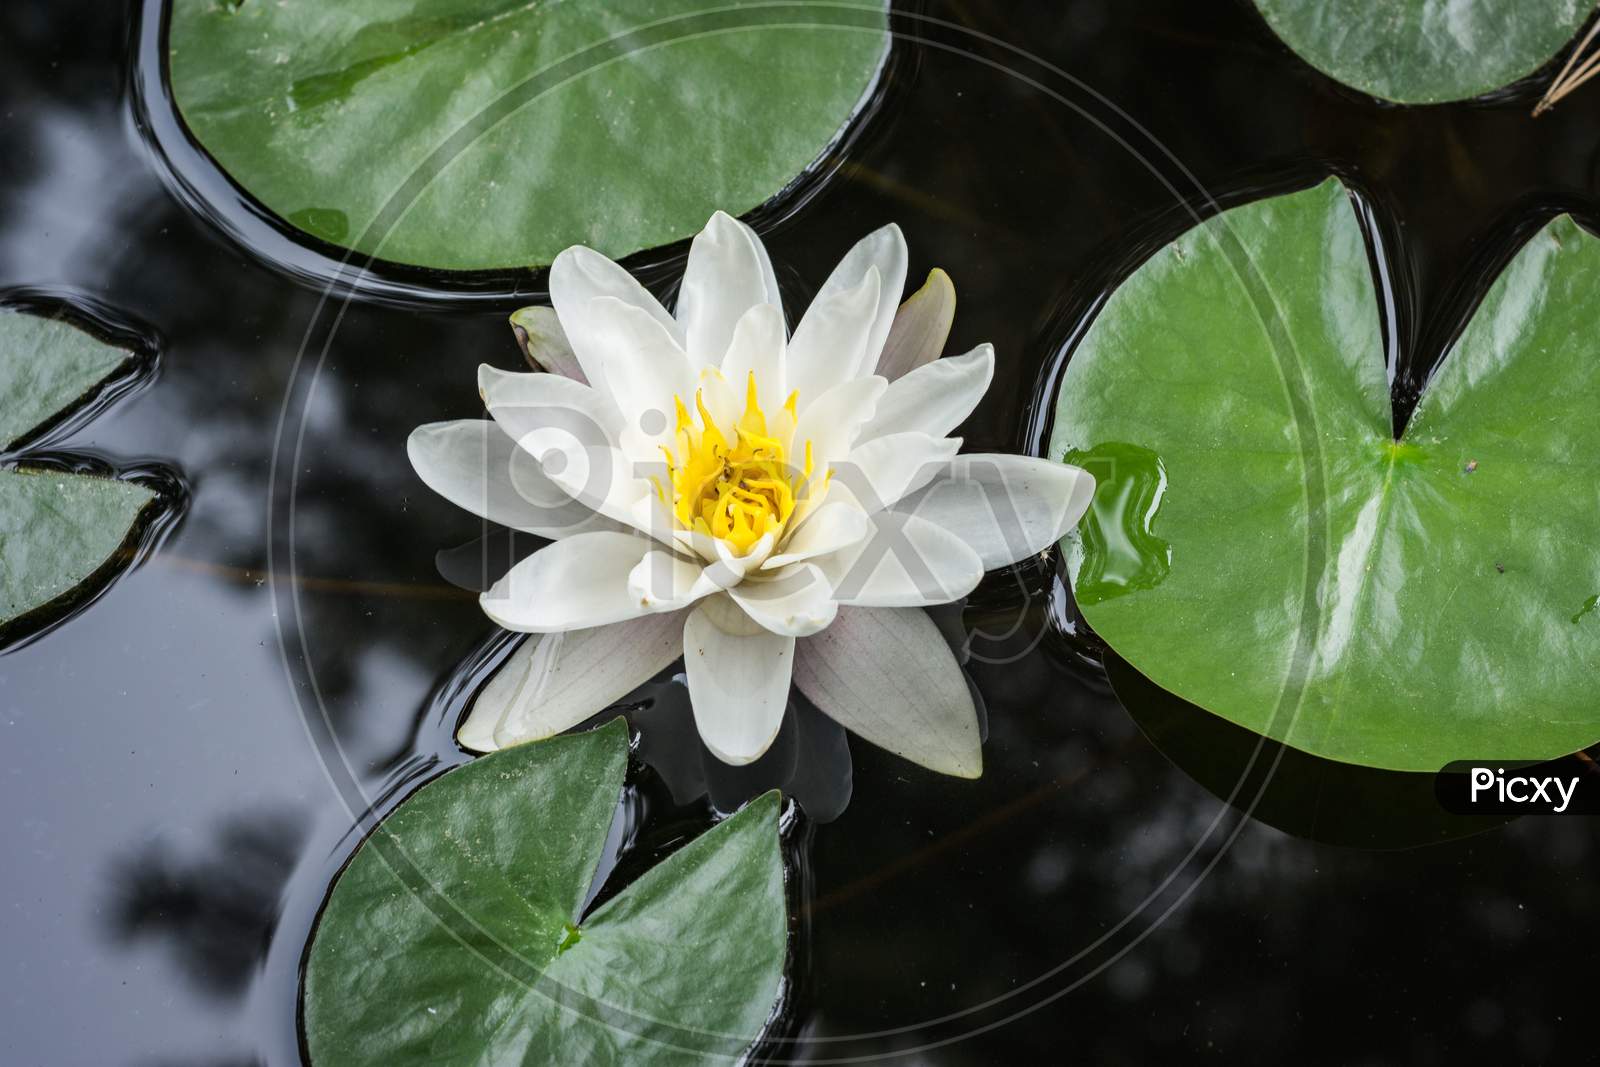 Nymphaea Lotus, White Lotus Flowering In A Pond